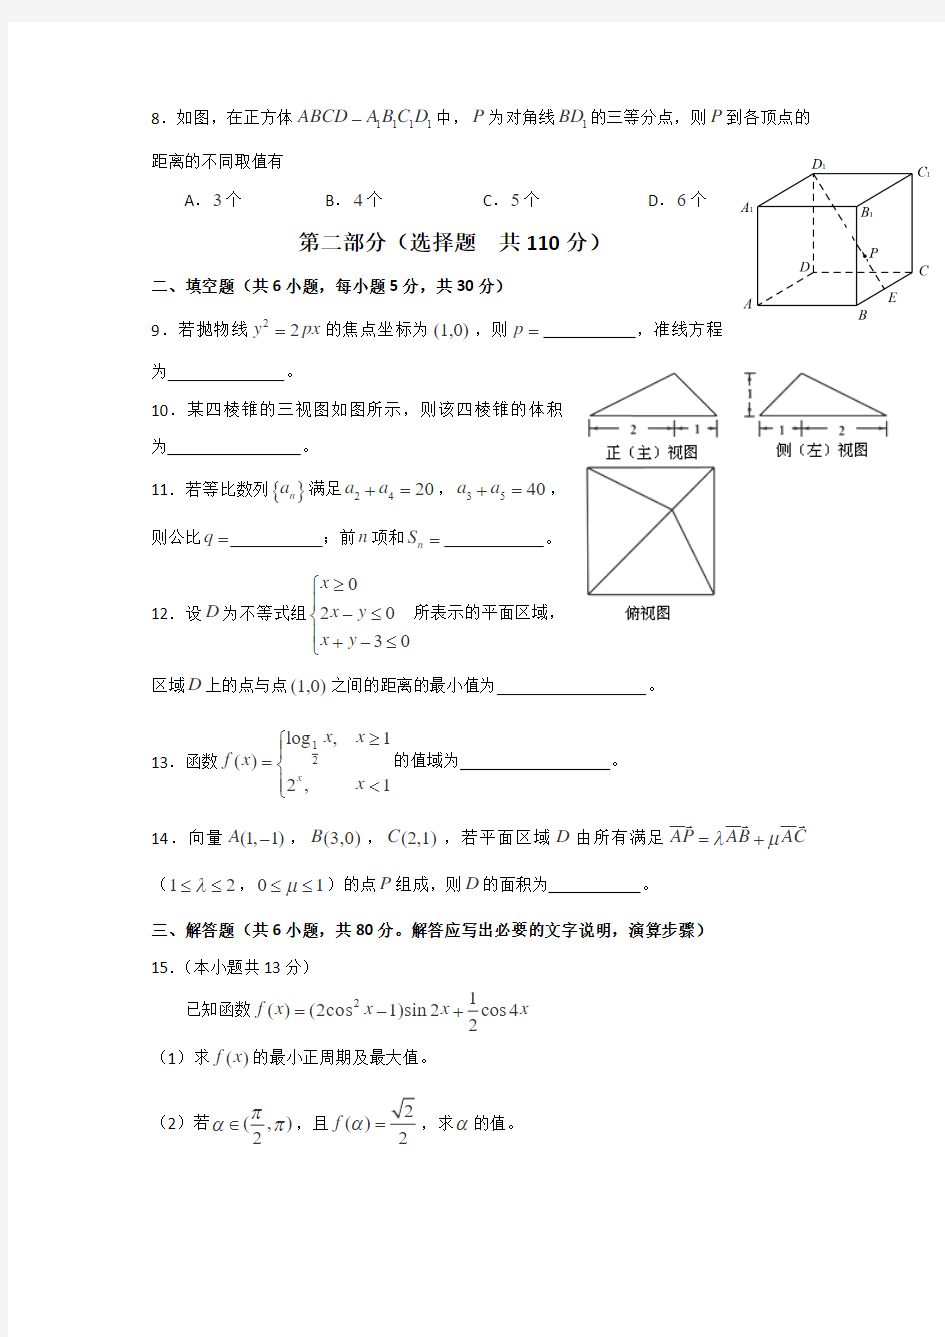 2013年高考文科数学(北京卷)